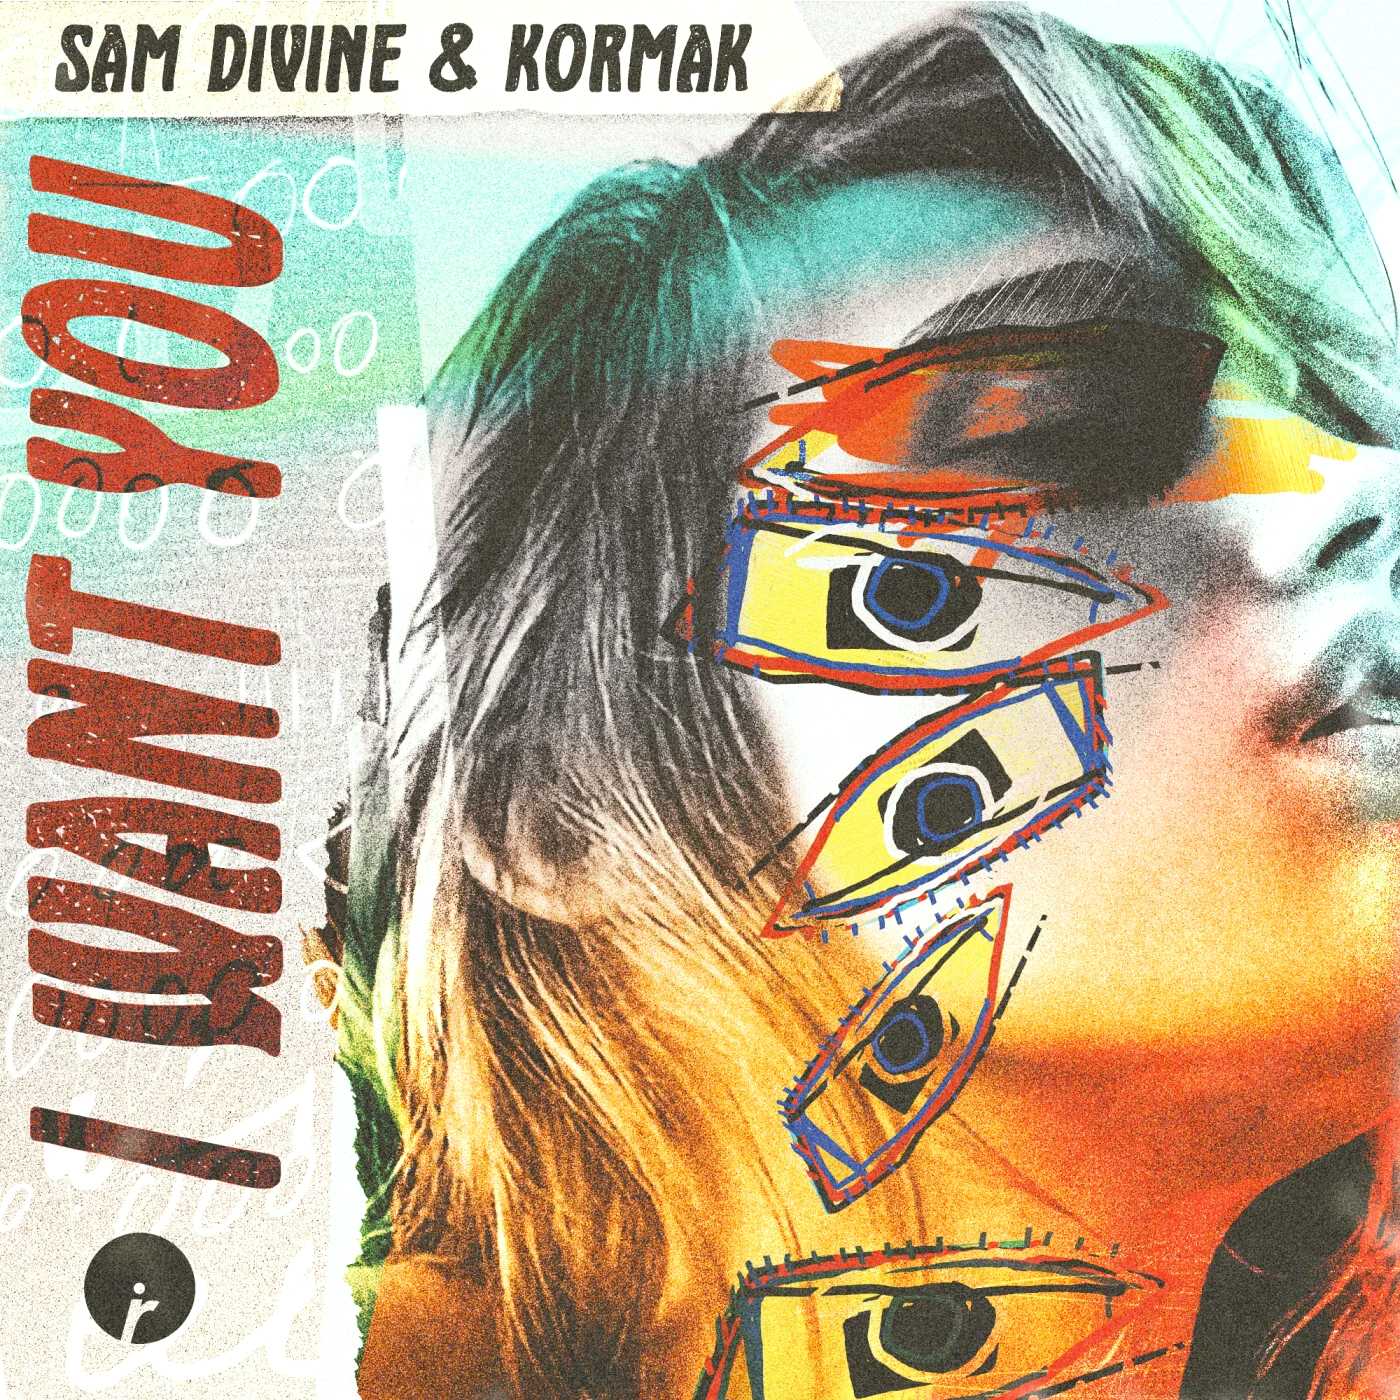 Sam Divine & Kormak — I Want You cover artwork